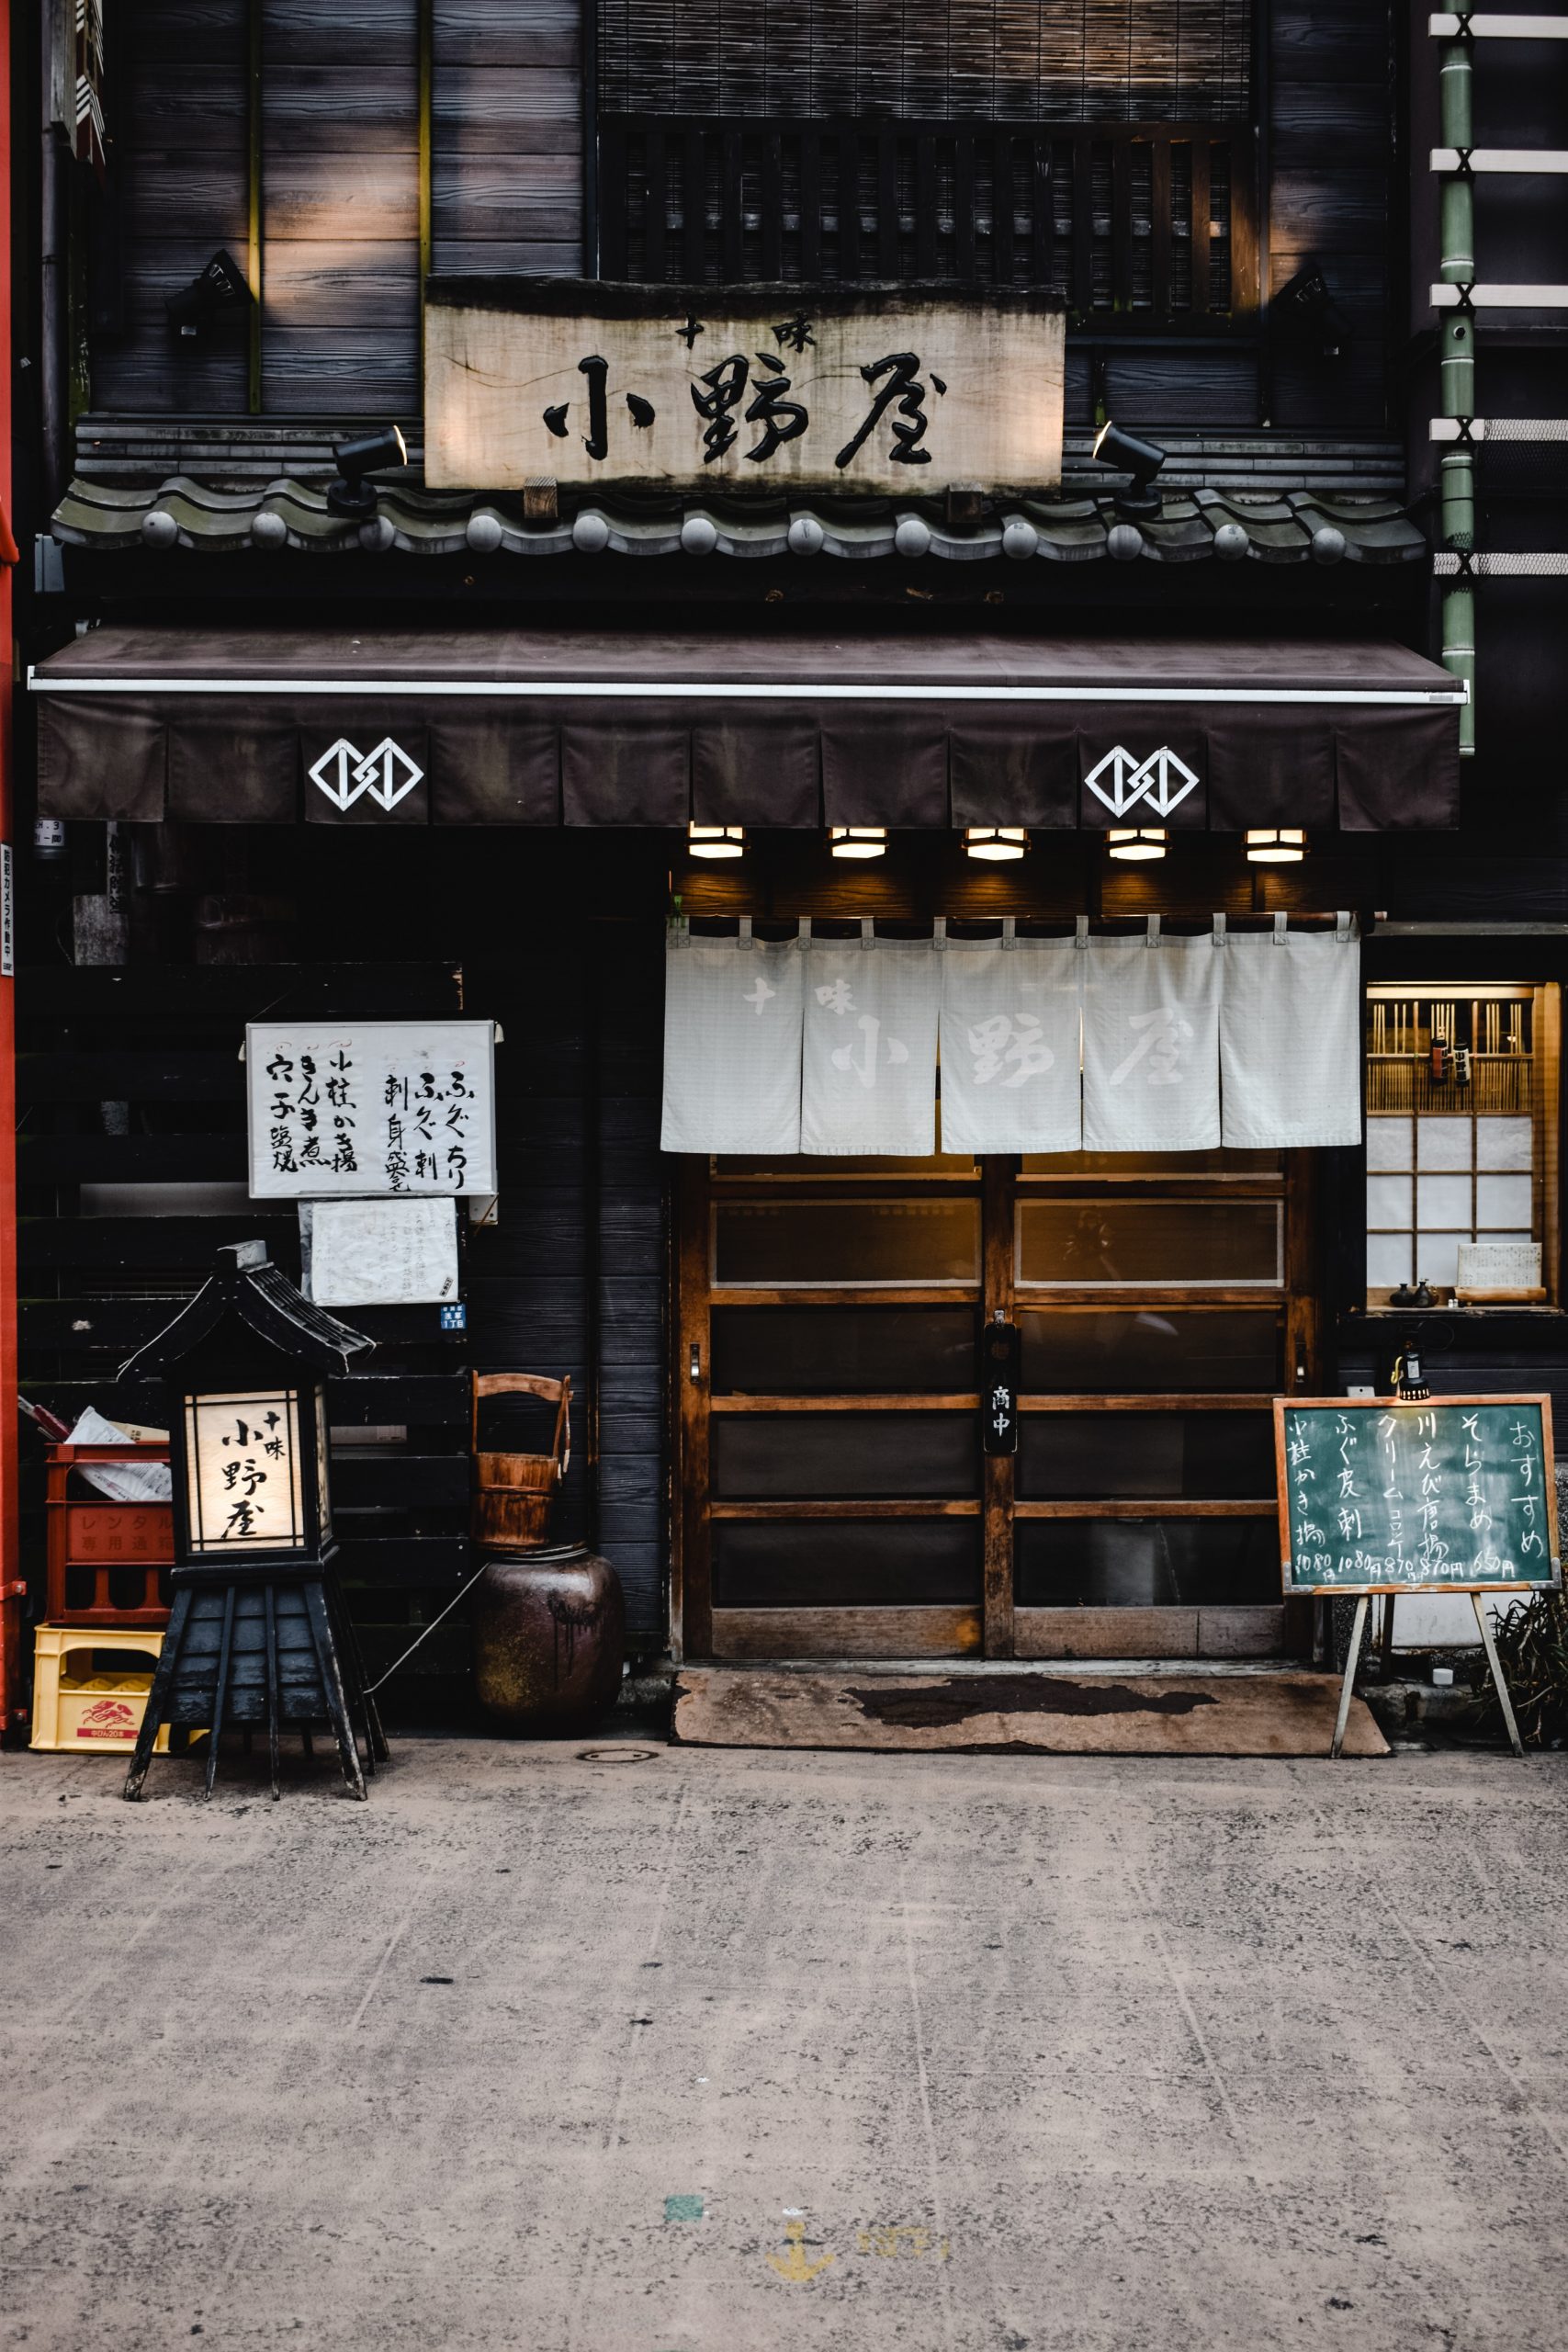 Ιαπωνία: Το δημογραφικό πρόβλημα και το σχέδιο του Κιότο για τα εγκαταλελειμμένα σπίτια